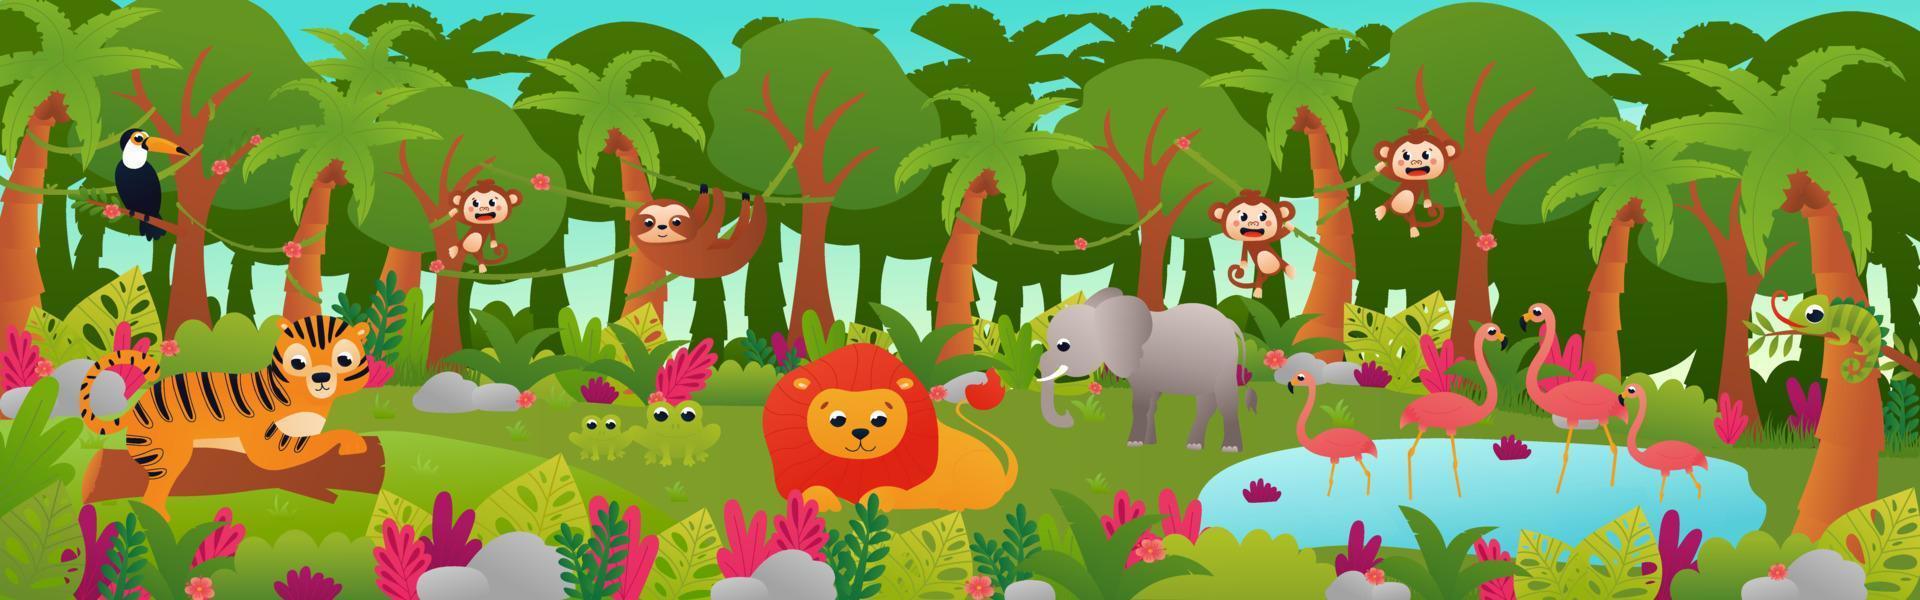 paisaje de selva tropical con animales lindos, pancarta web con leones, flamencos y tigres sobre troncos de madera al estilo de las caricaturas, afiche del zoológico, selva tropical horizontal con flores y estanque vector